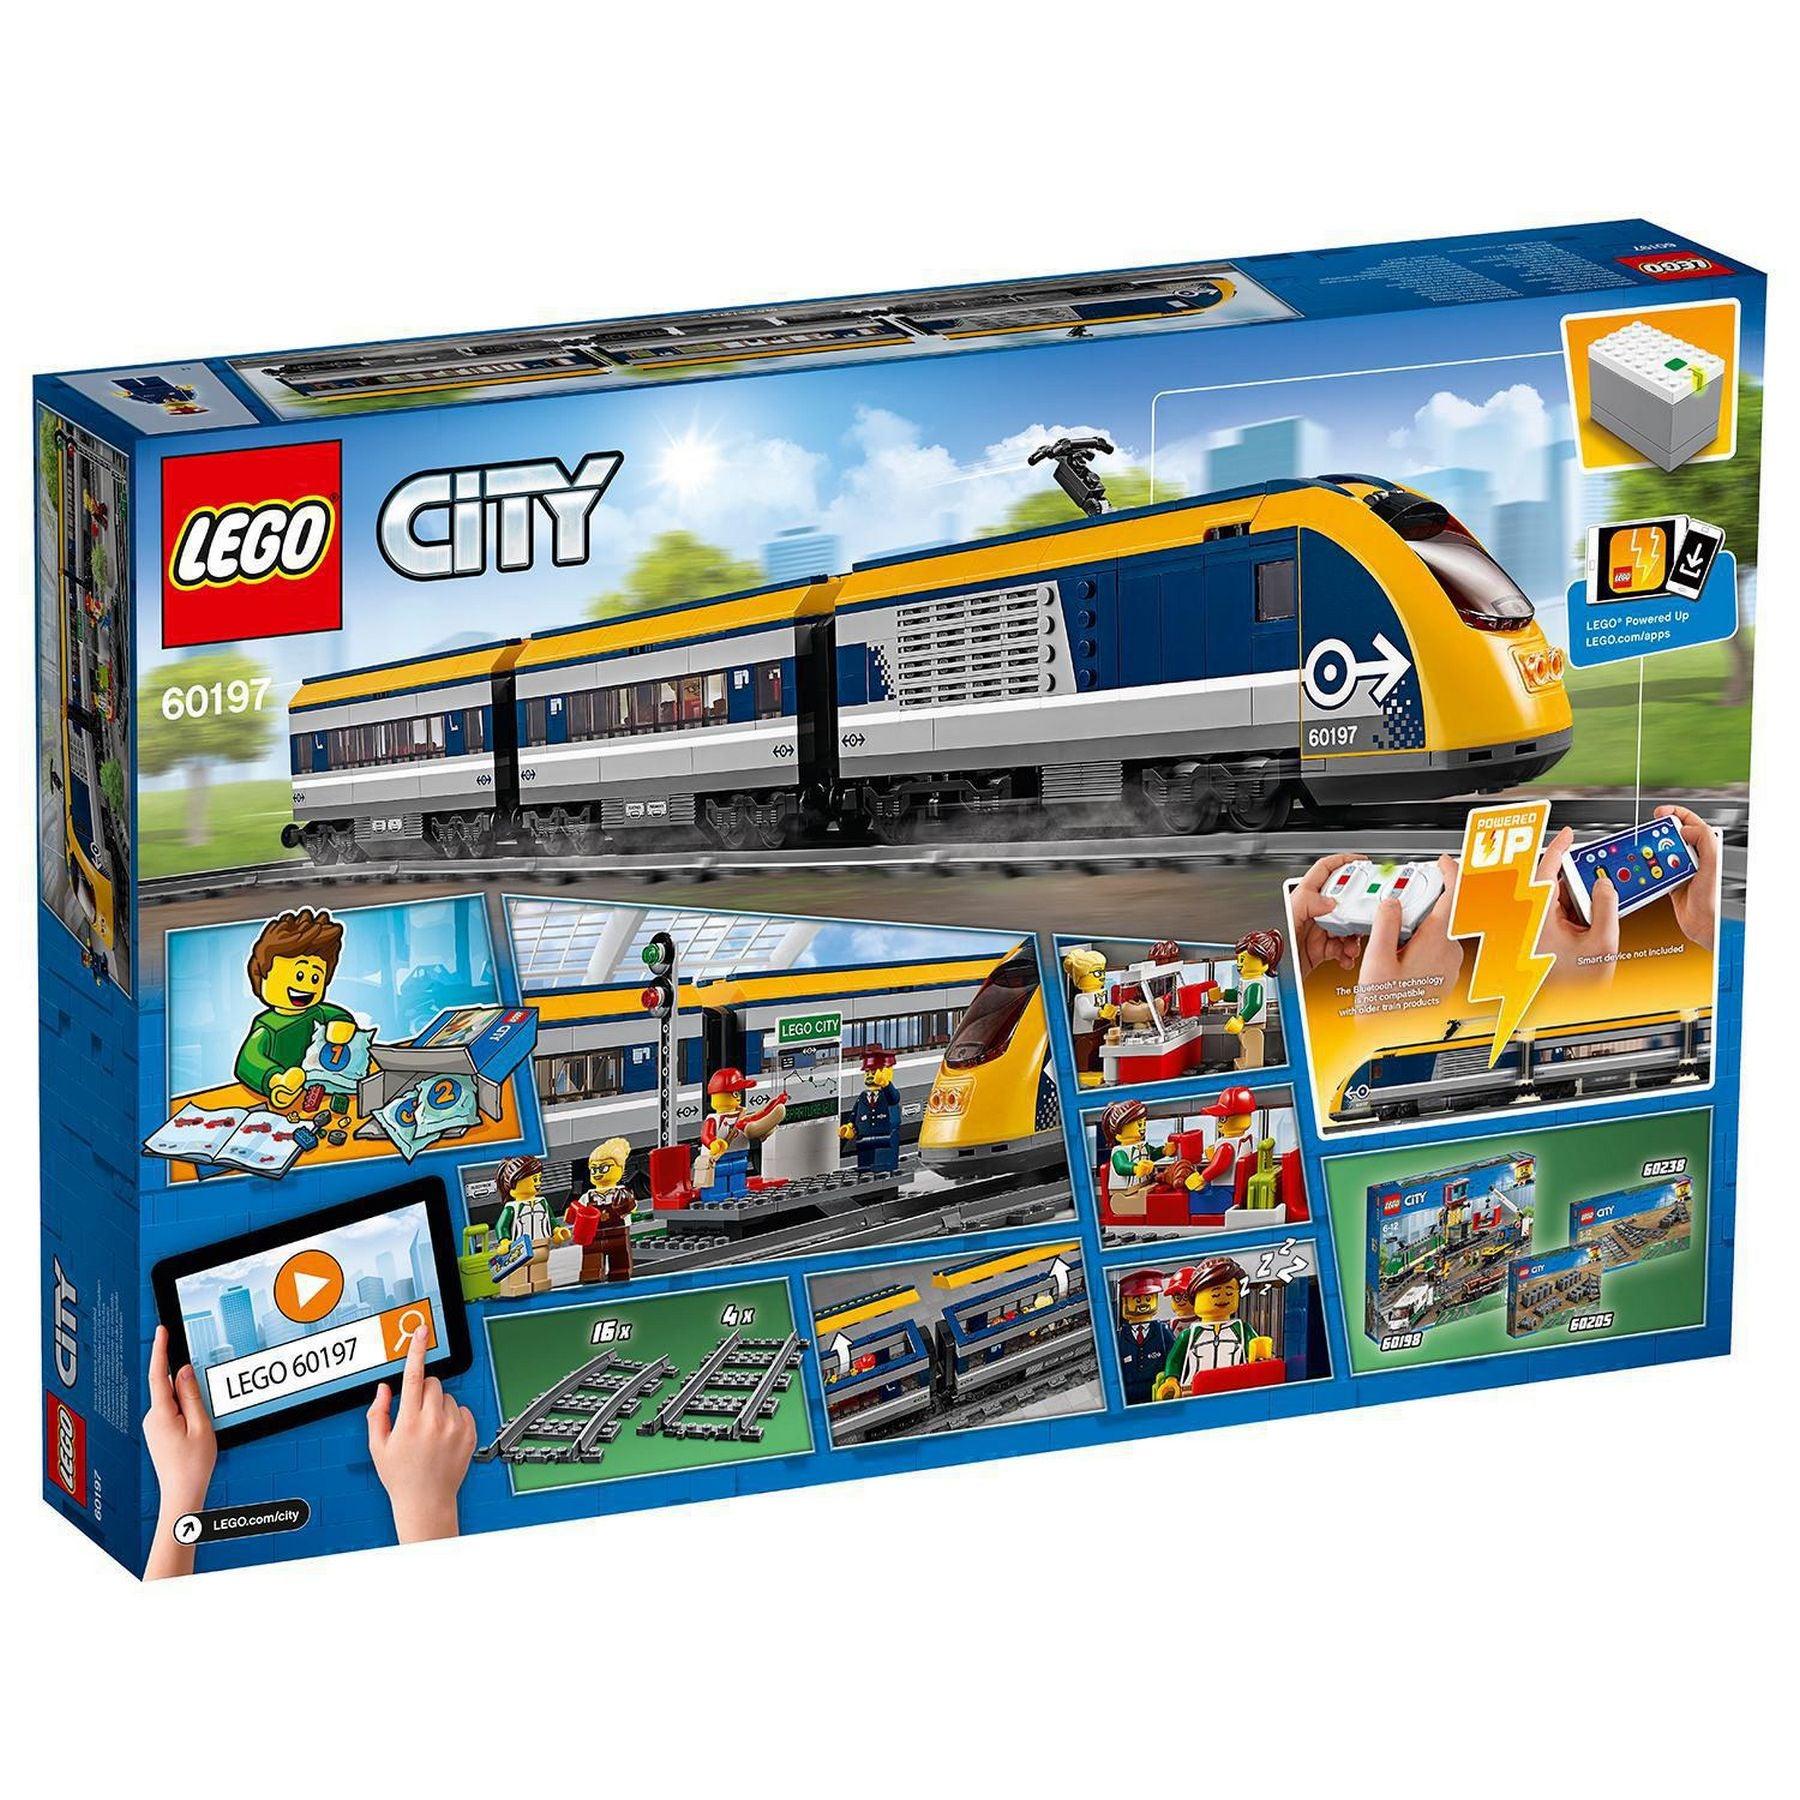 LEGO Passagiers trein 60197 City | 2TTOYS ✓ Official shop<br>